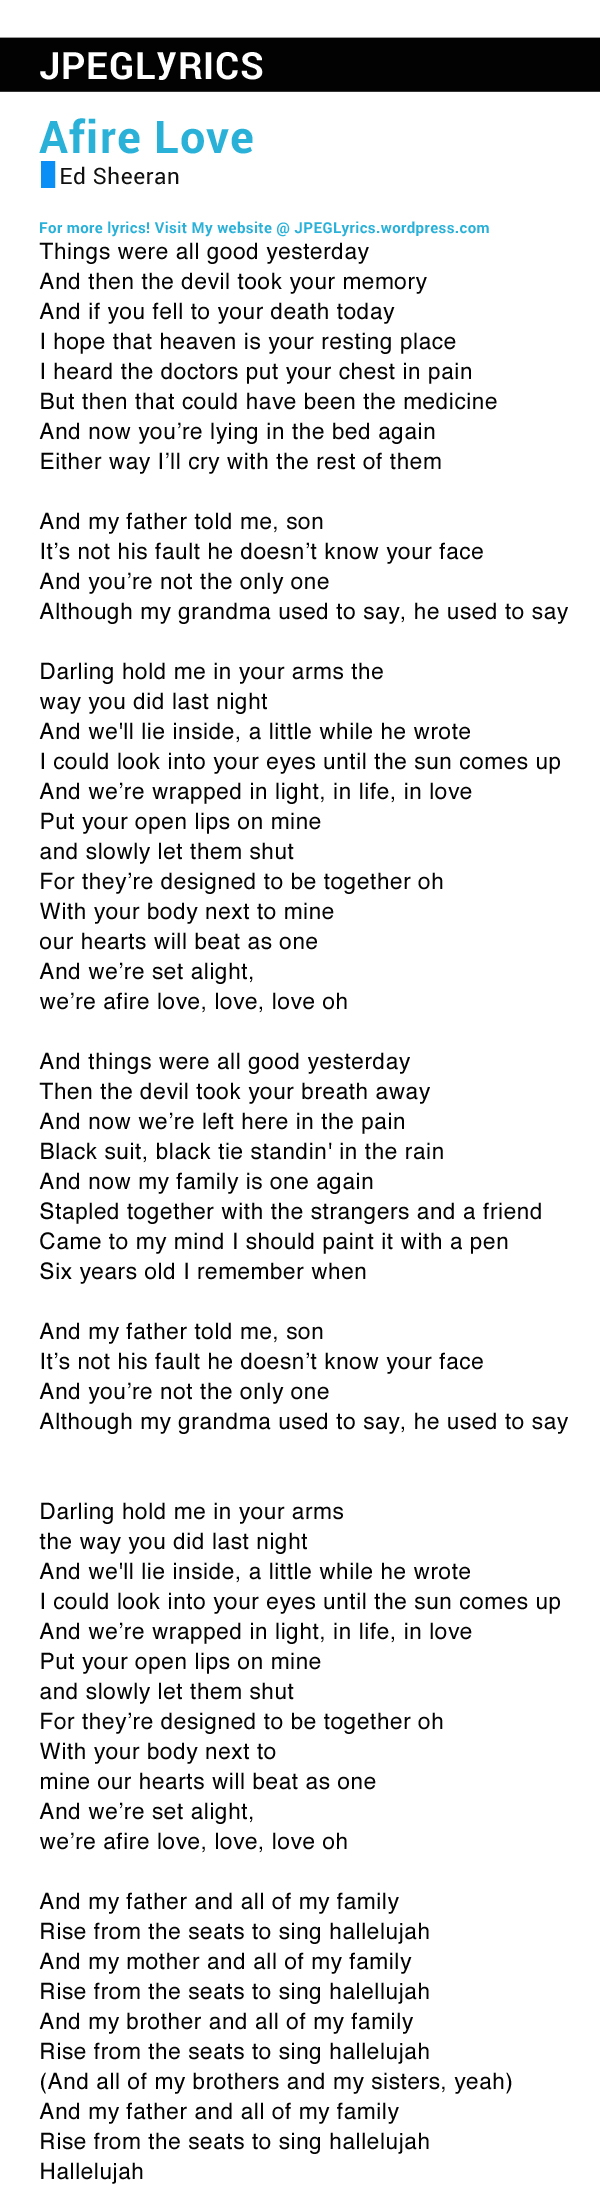 Afire Love By Ed Sheeran Lyrics – JPEG Lyrics